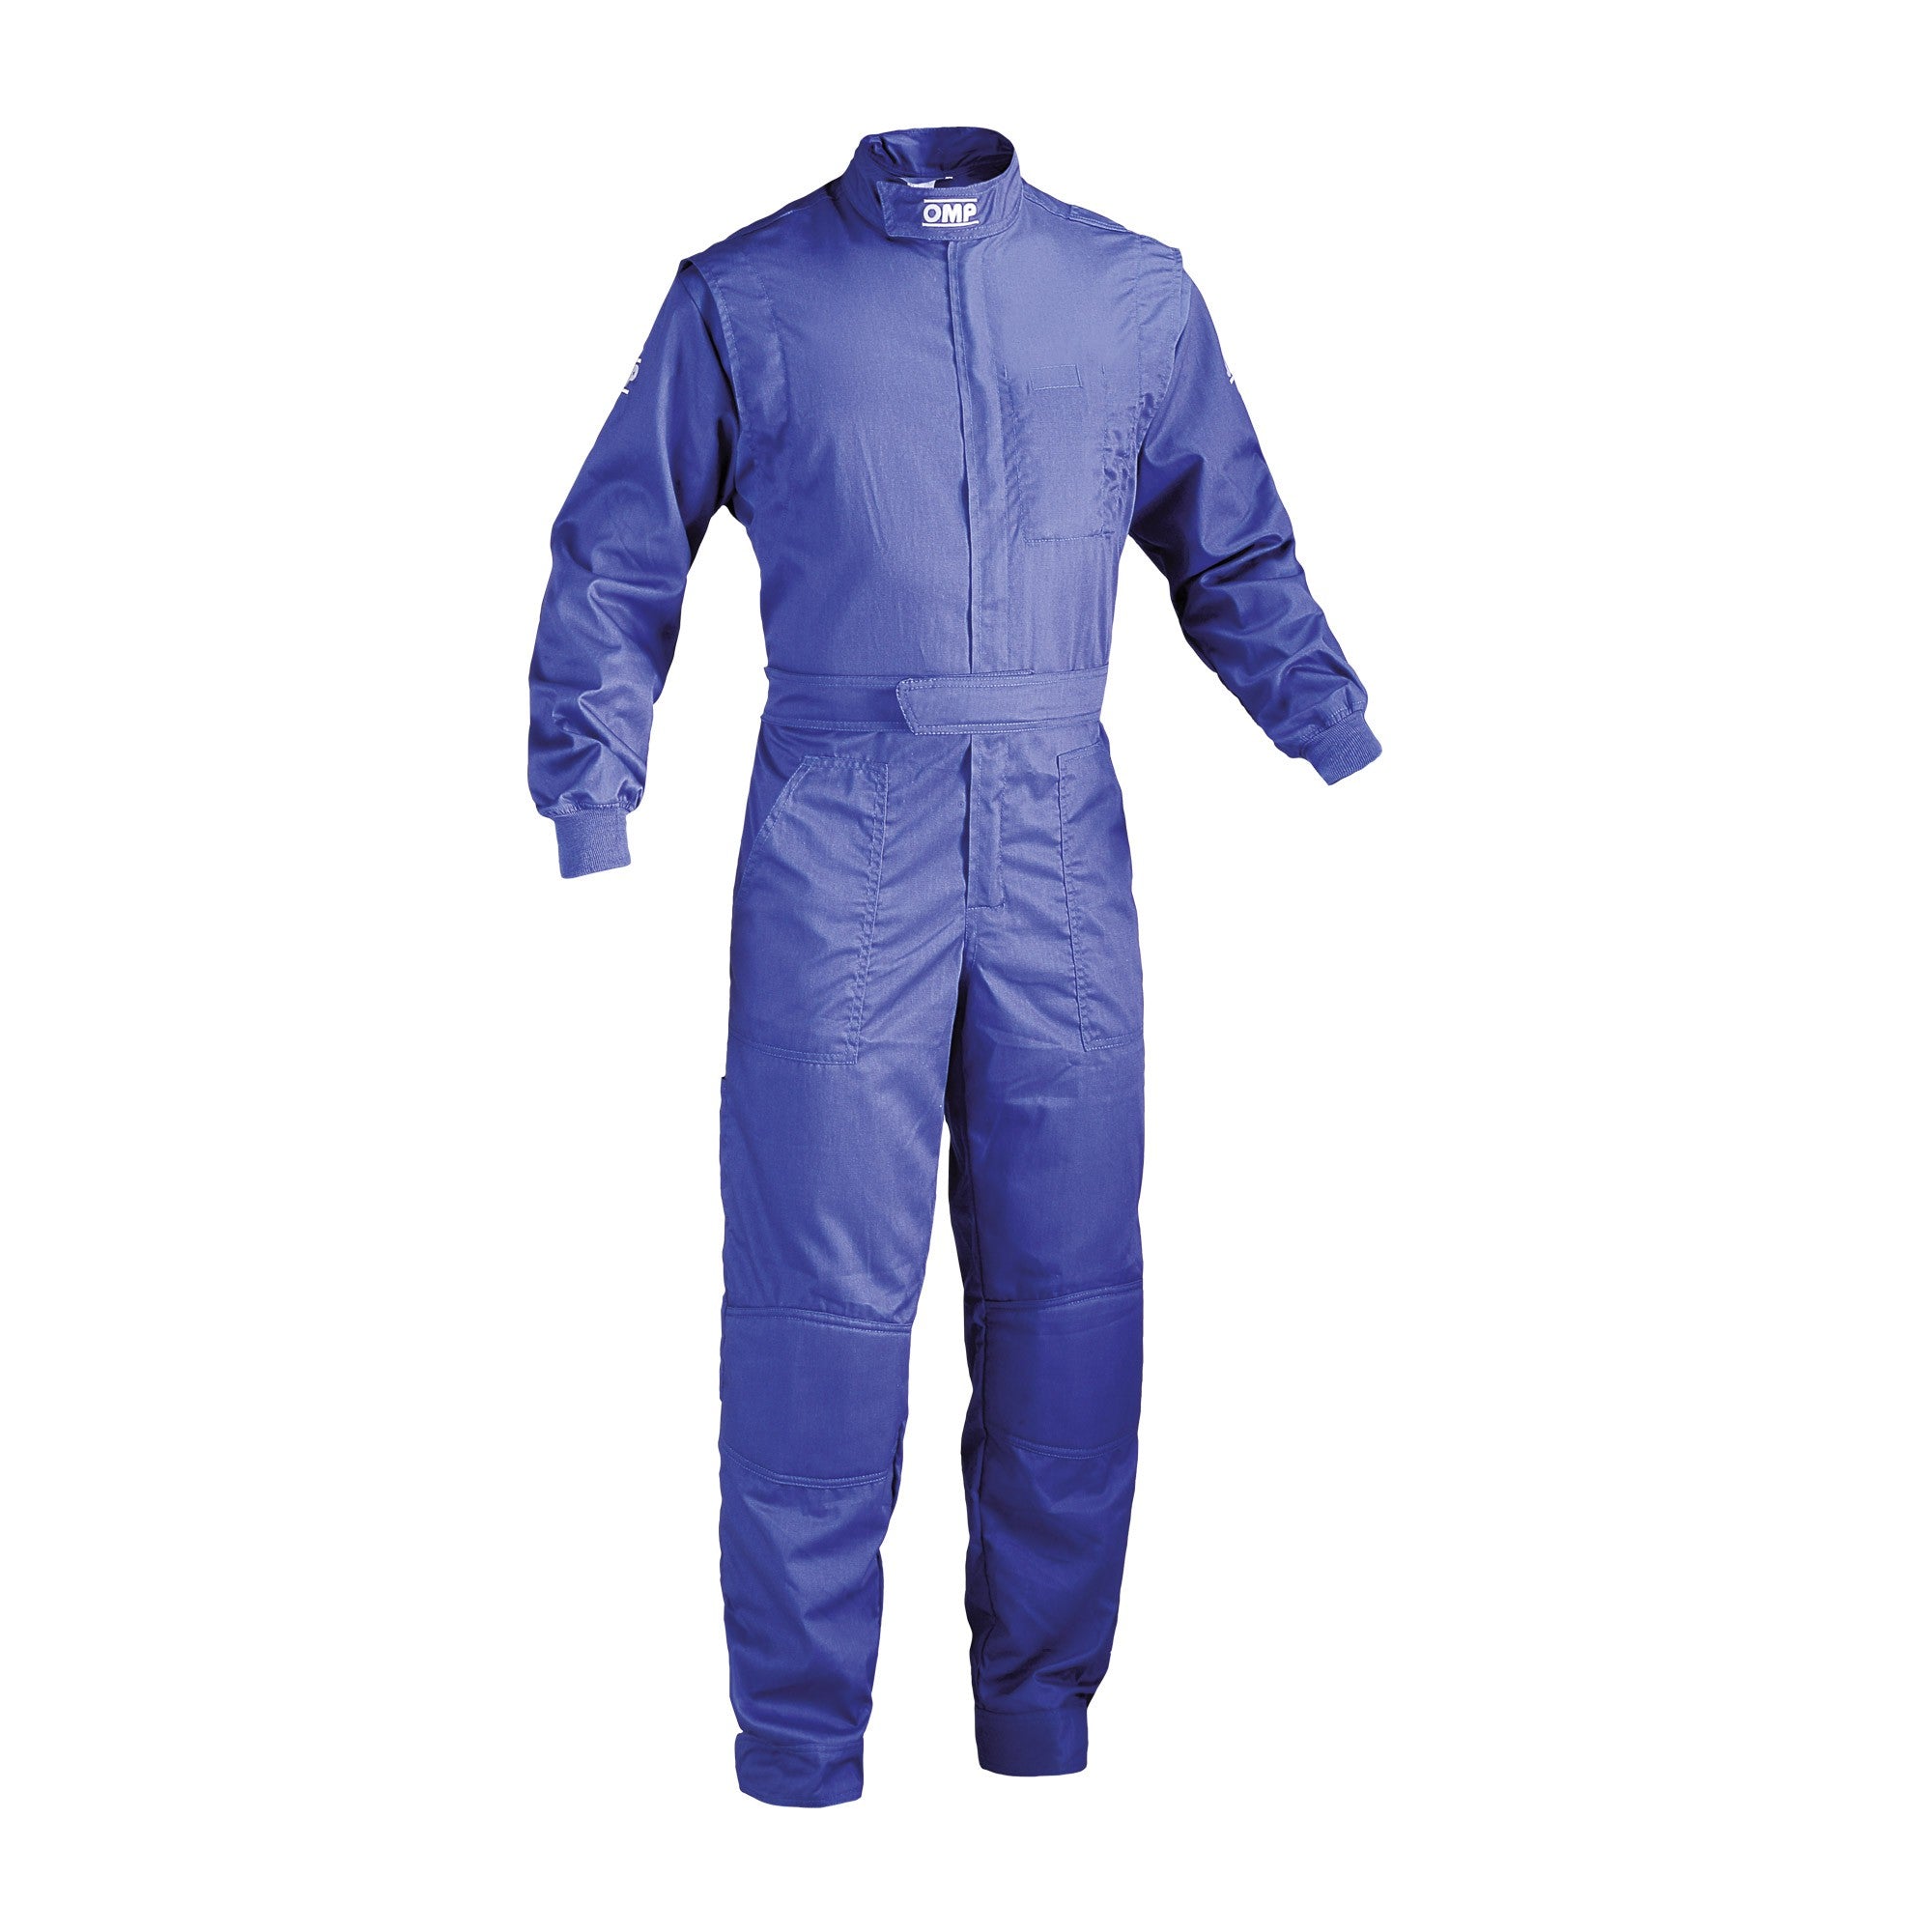 OMP NB0-1579-A01-041-56 (NB157904156) Mechanic suit SUMMER, blue, size 56 Photo-0 